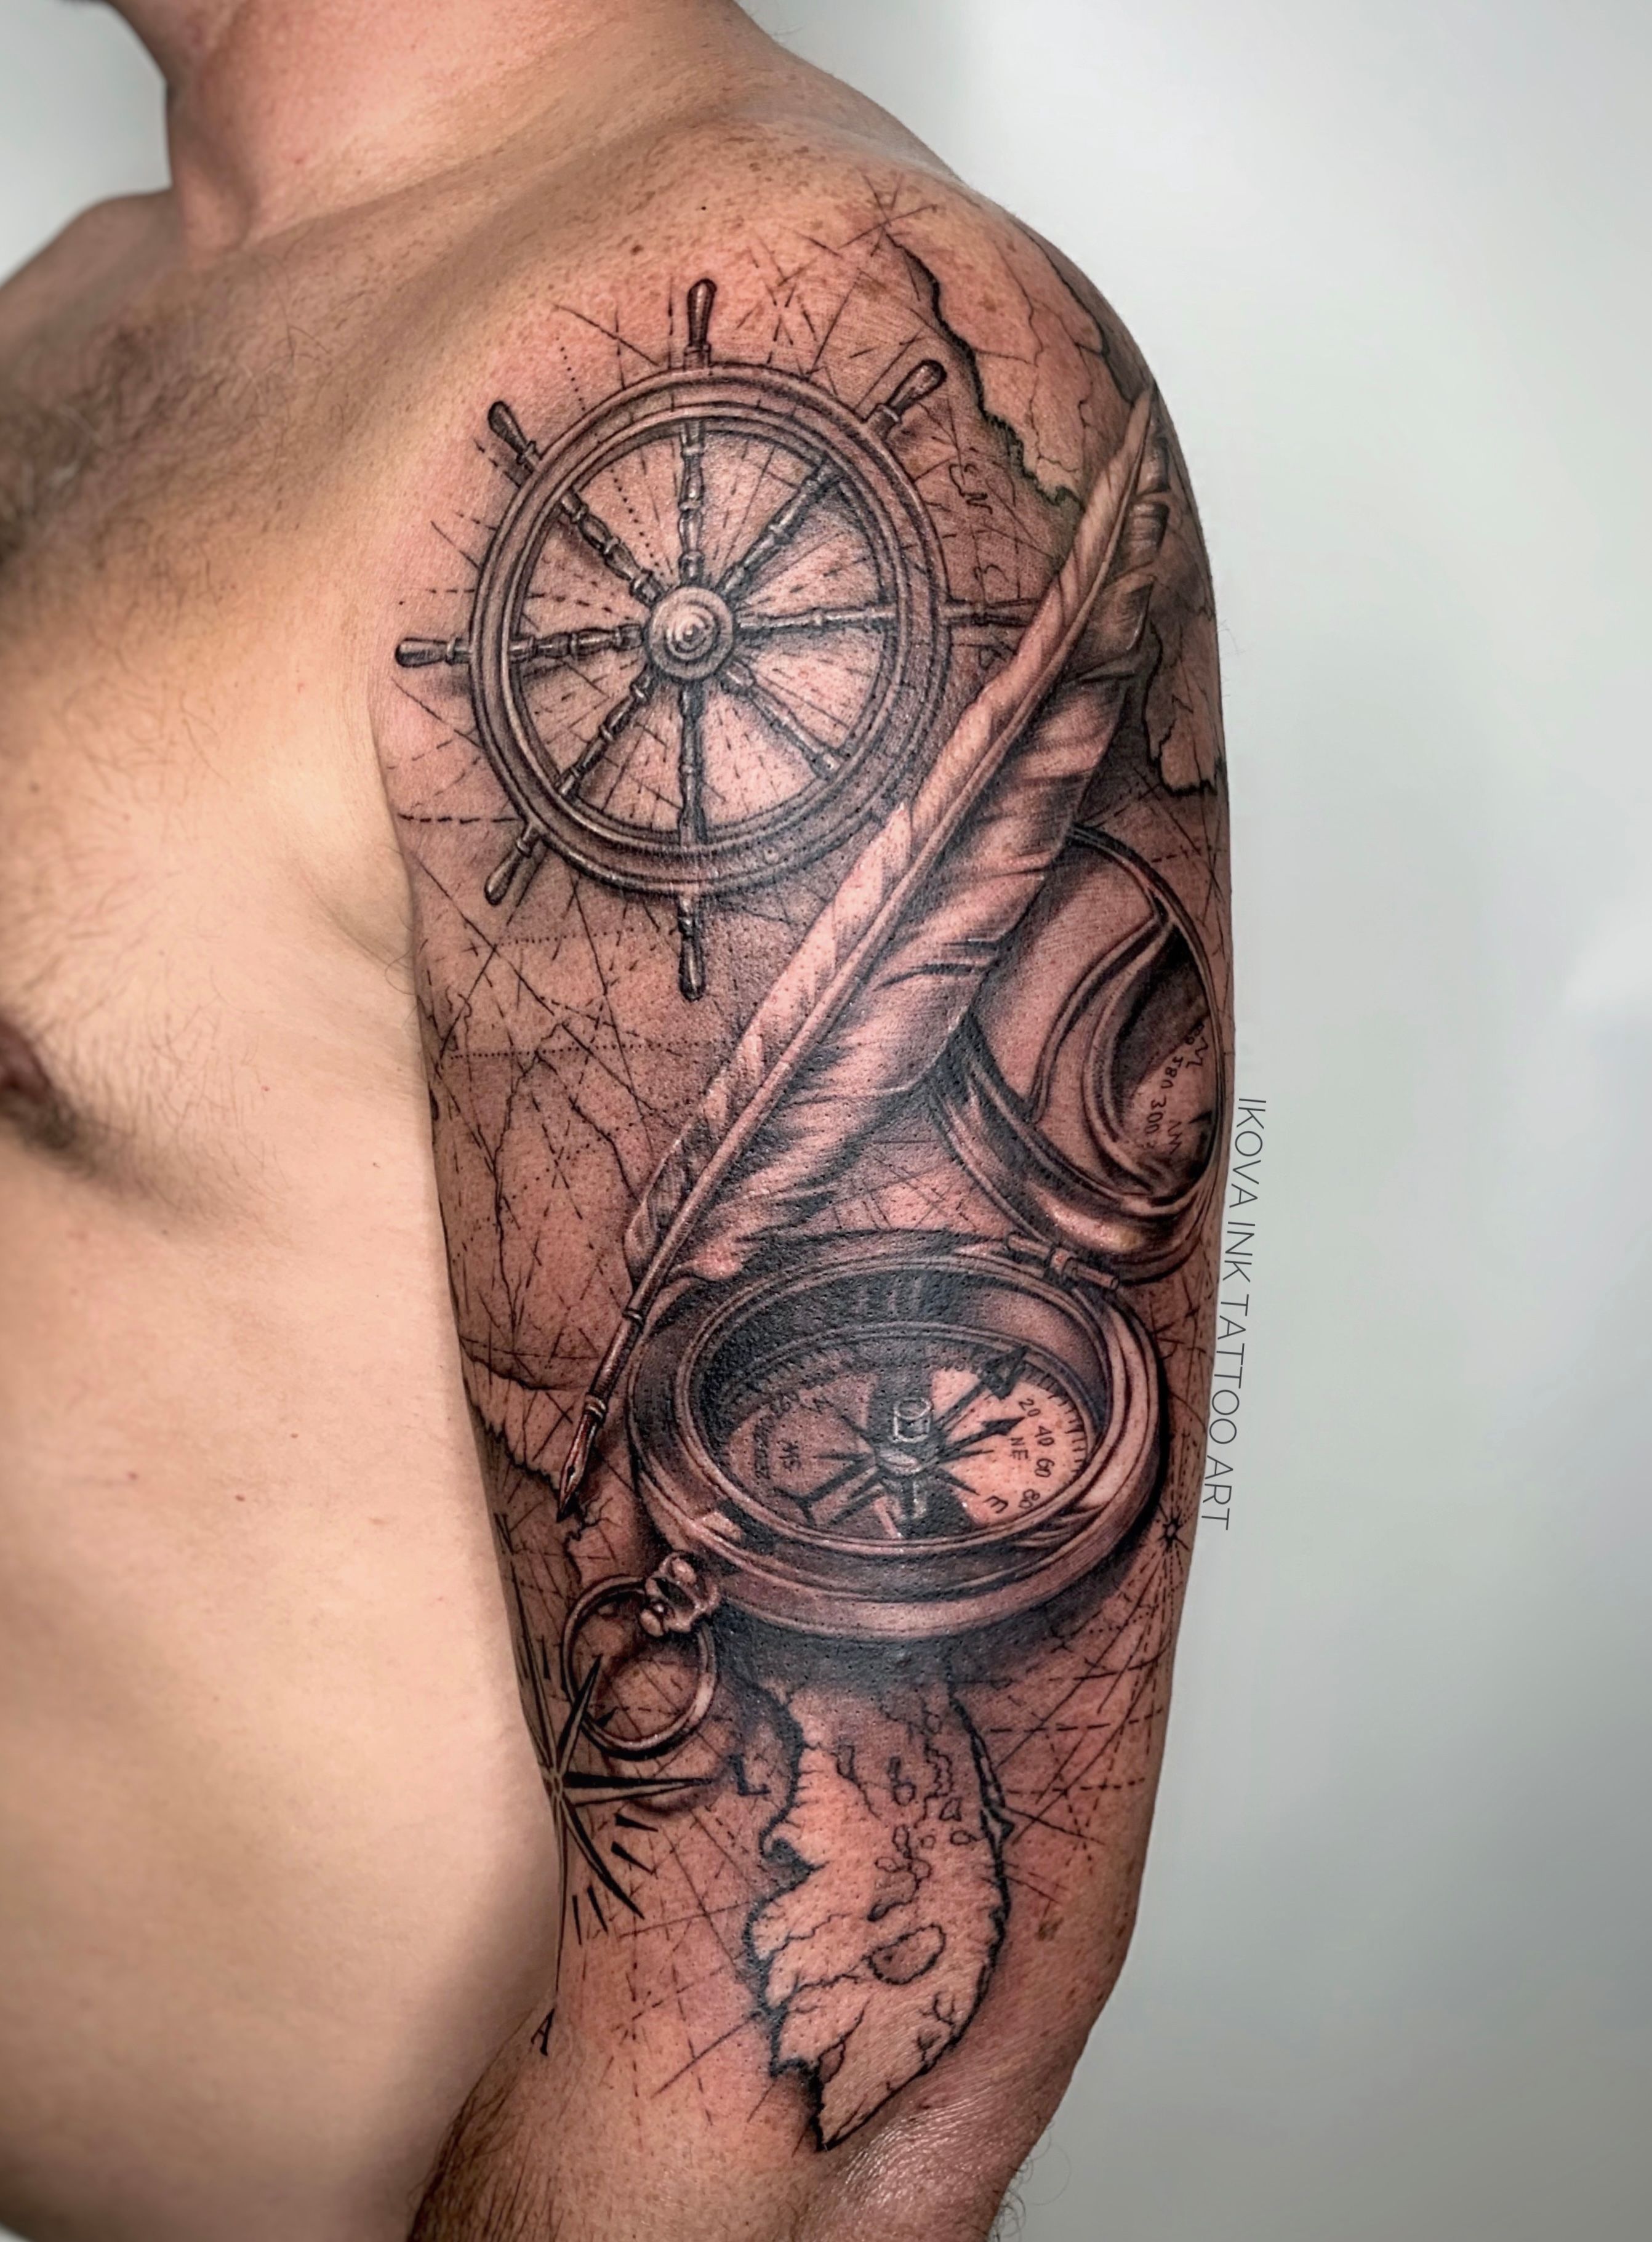 Nautical tattoos - Best Tattoo Ideas Gallery